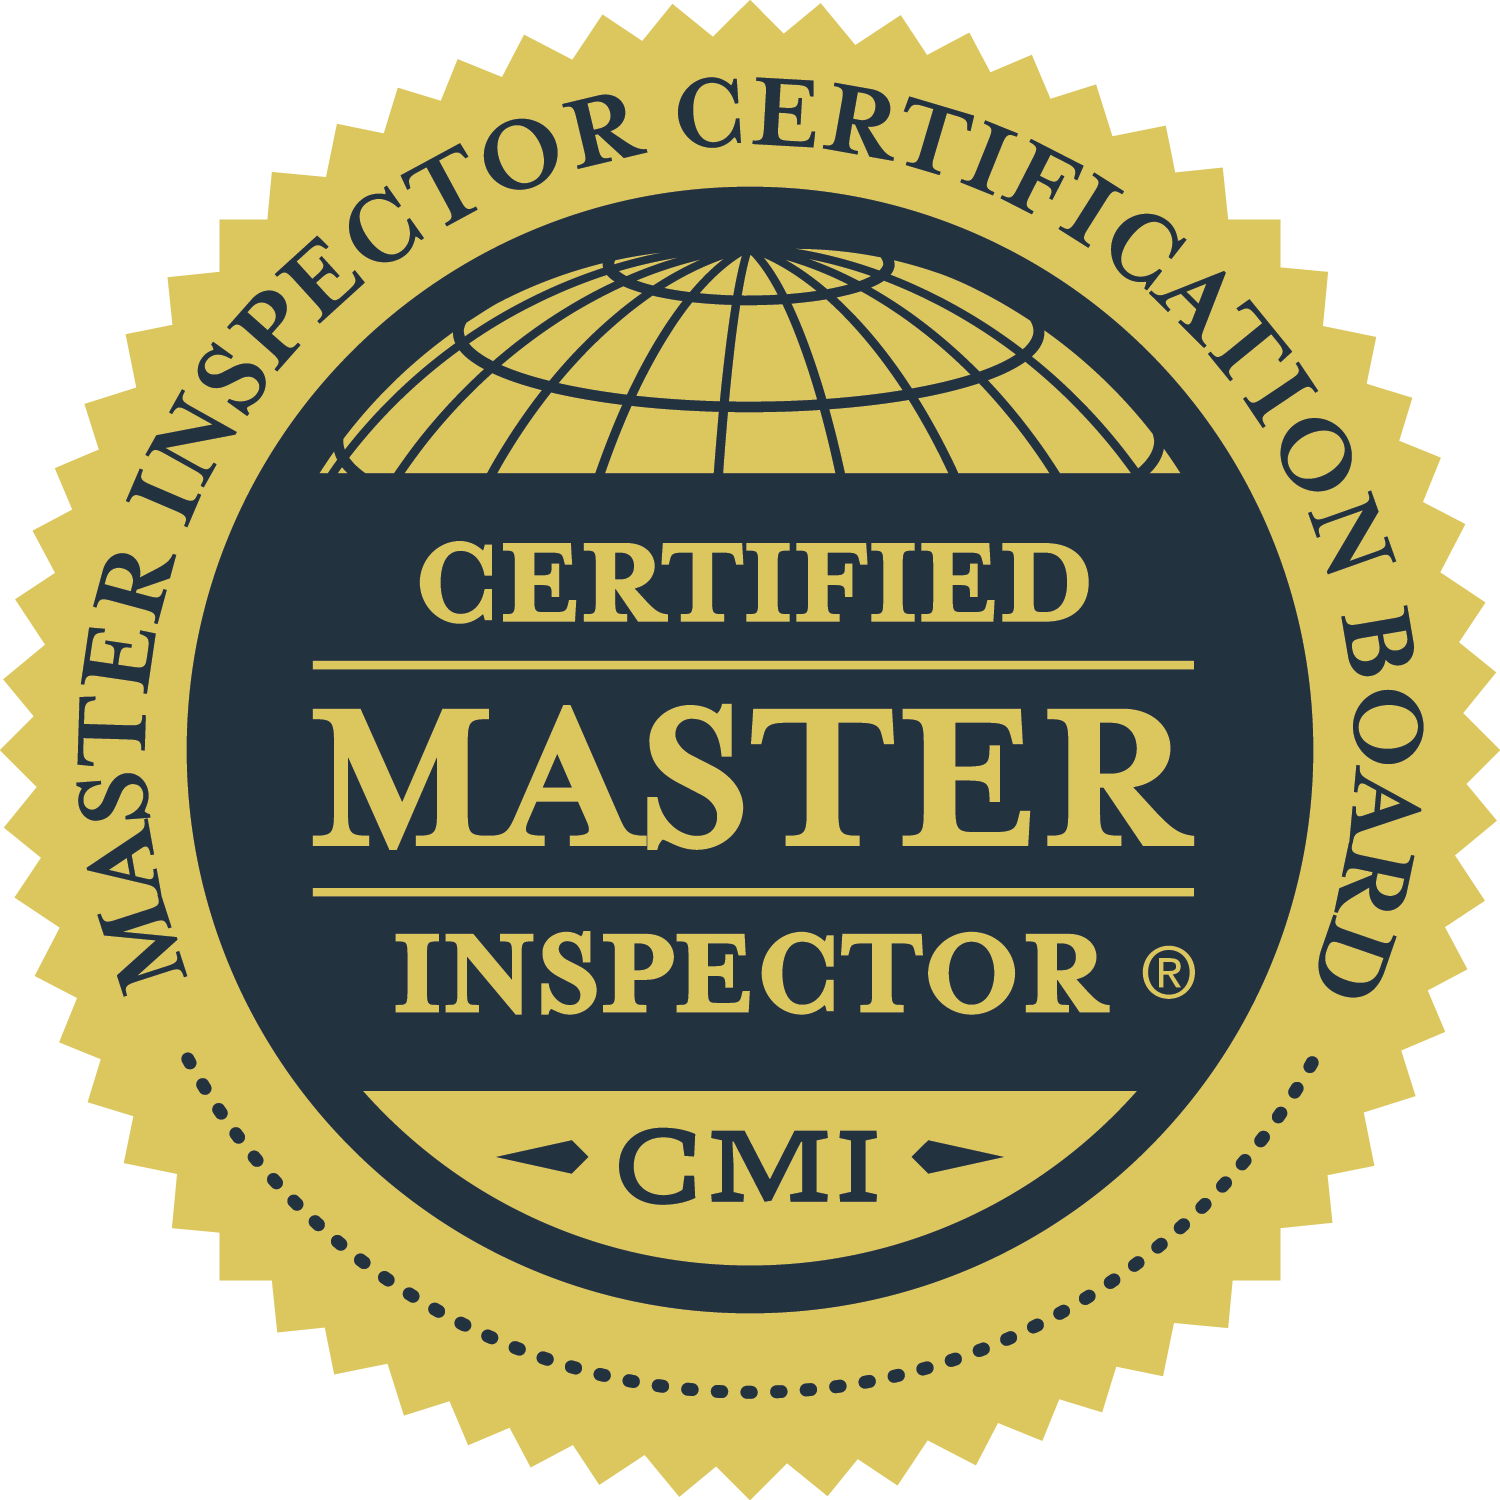 Cirtification Logo - Certifed Master Inspector® Logos. Certified Master Inspector®